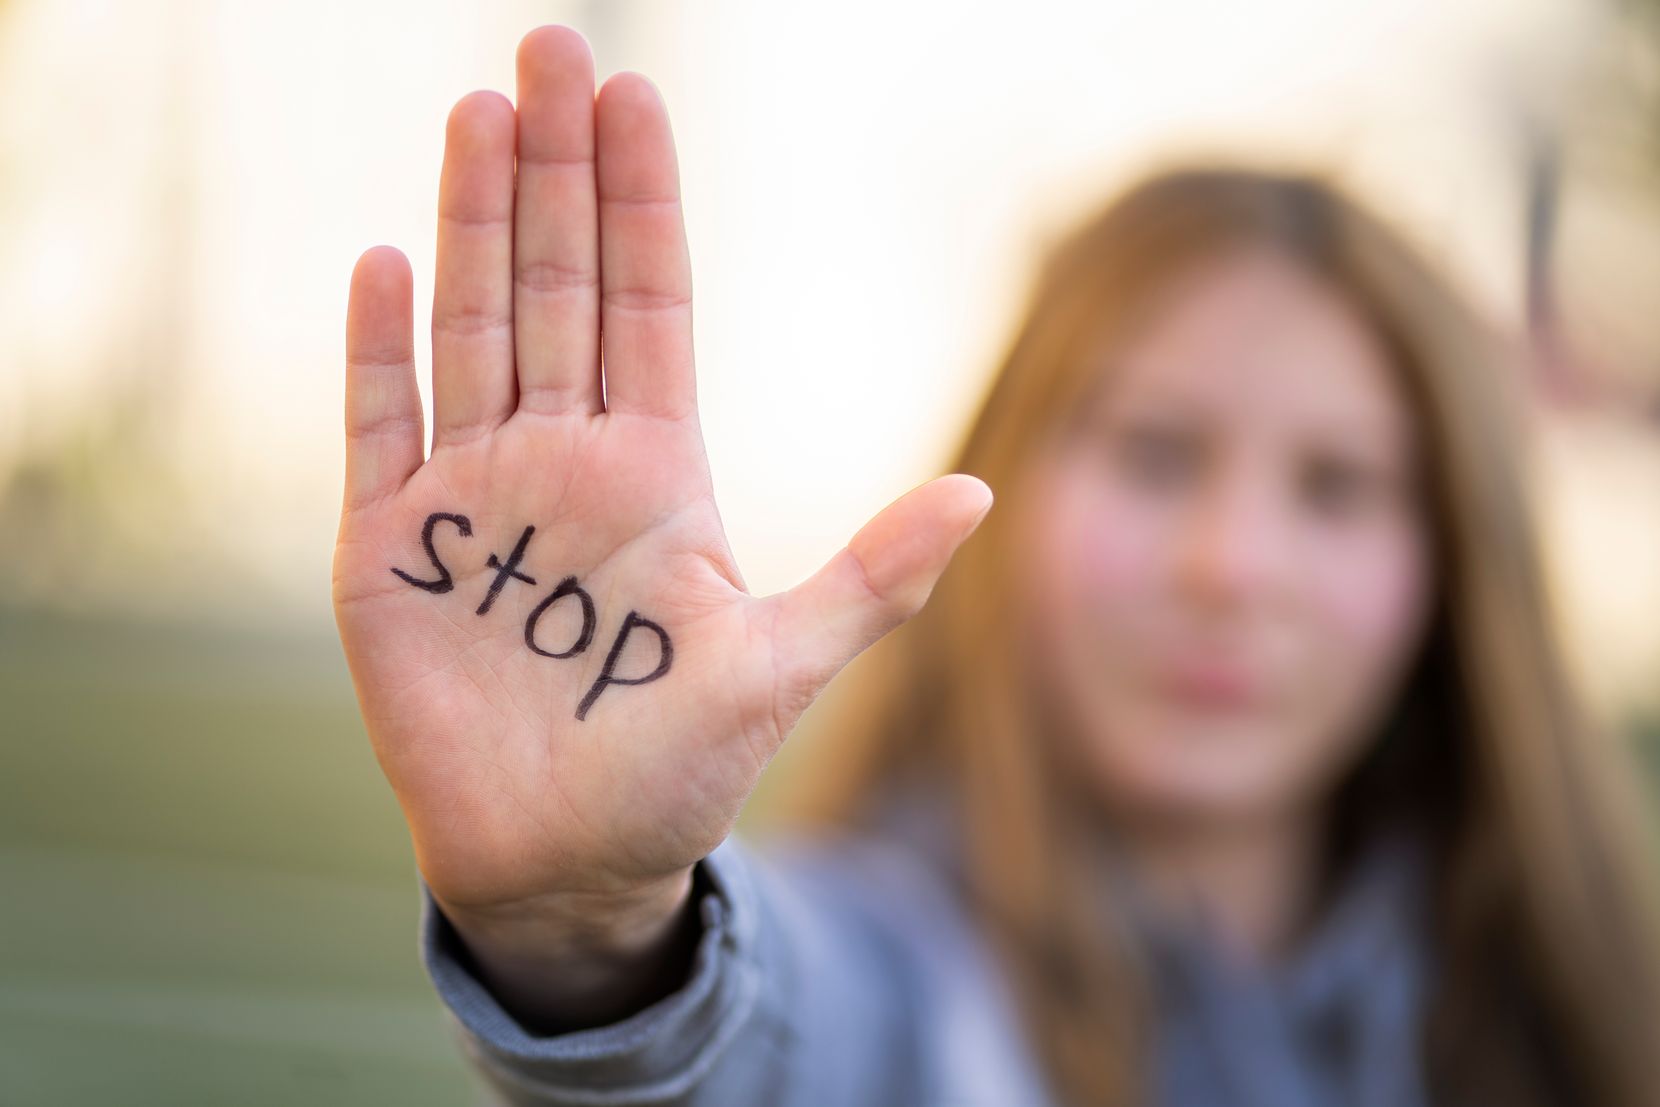 Man sieht eine Frau mit distanzierter Haltung, auf deren Hand «Stop» geschrieben steht.